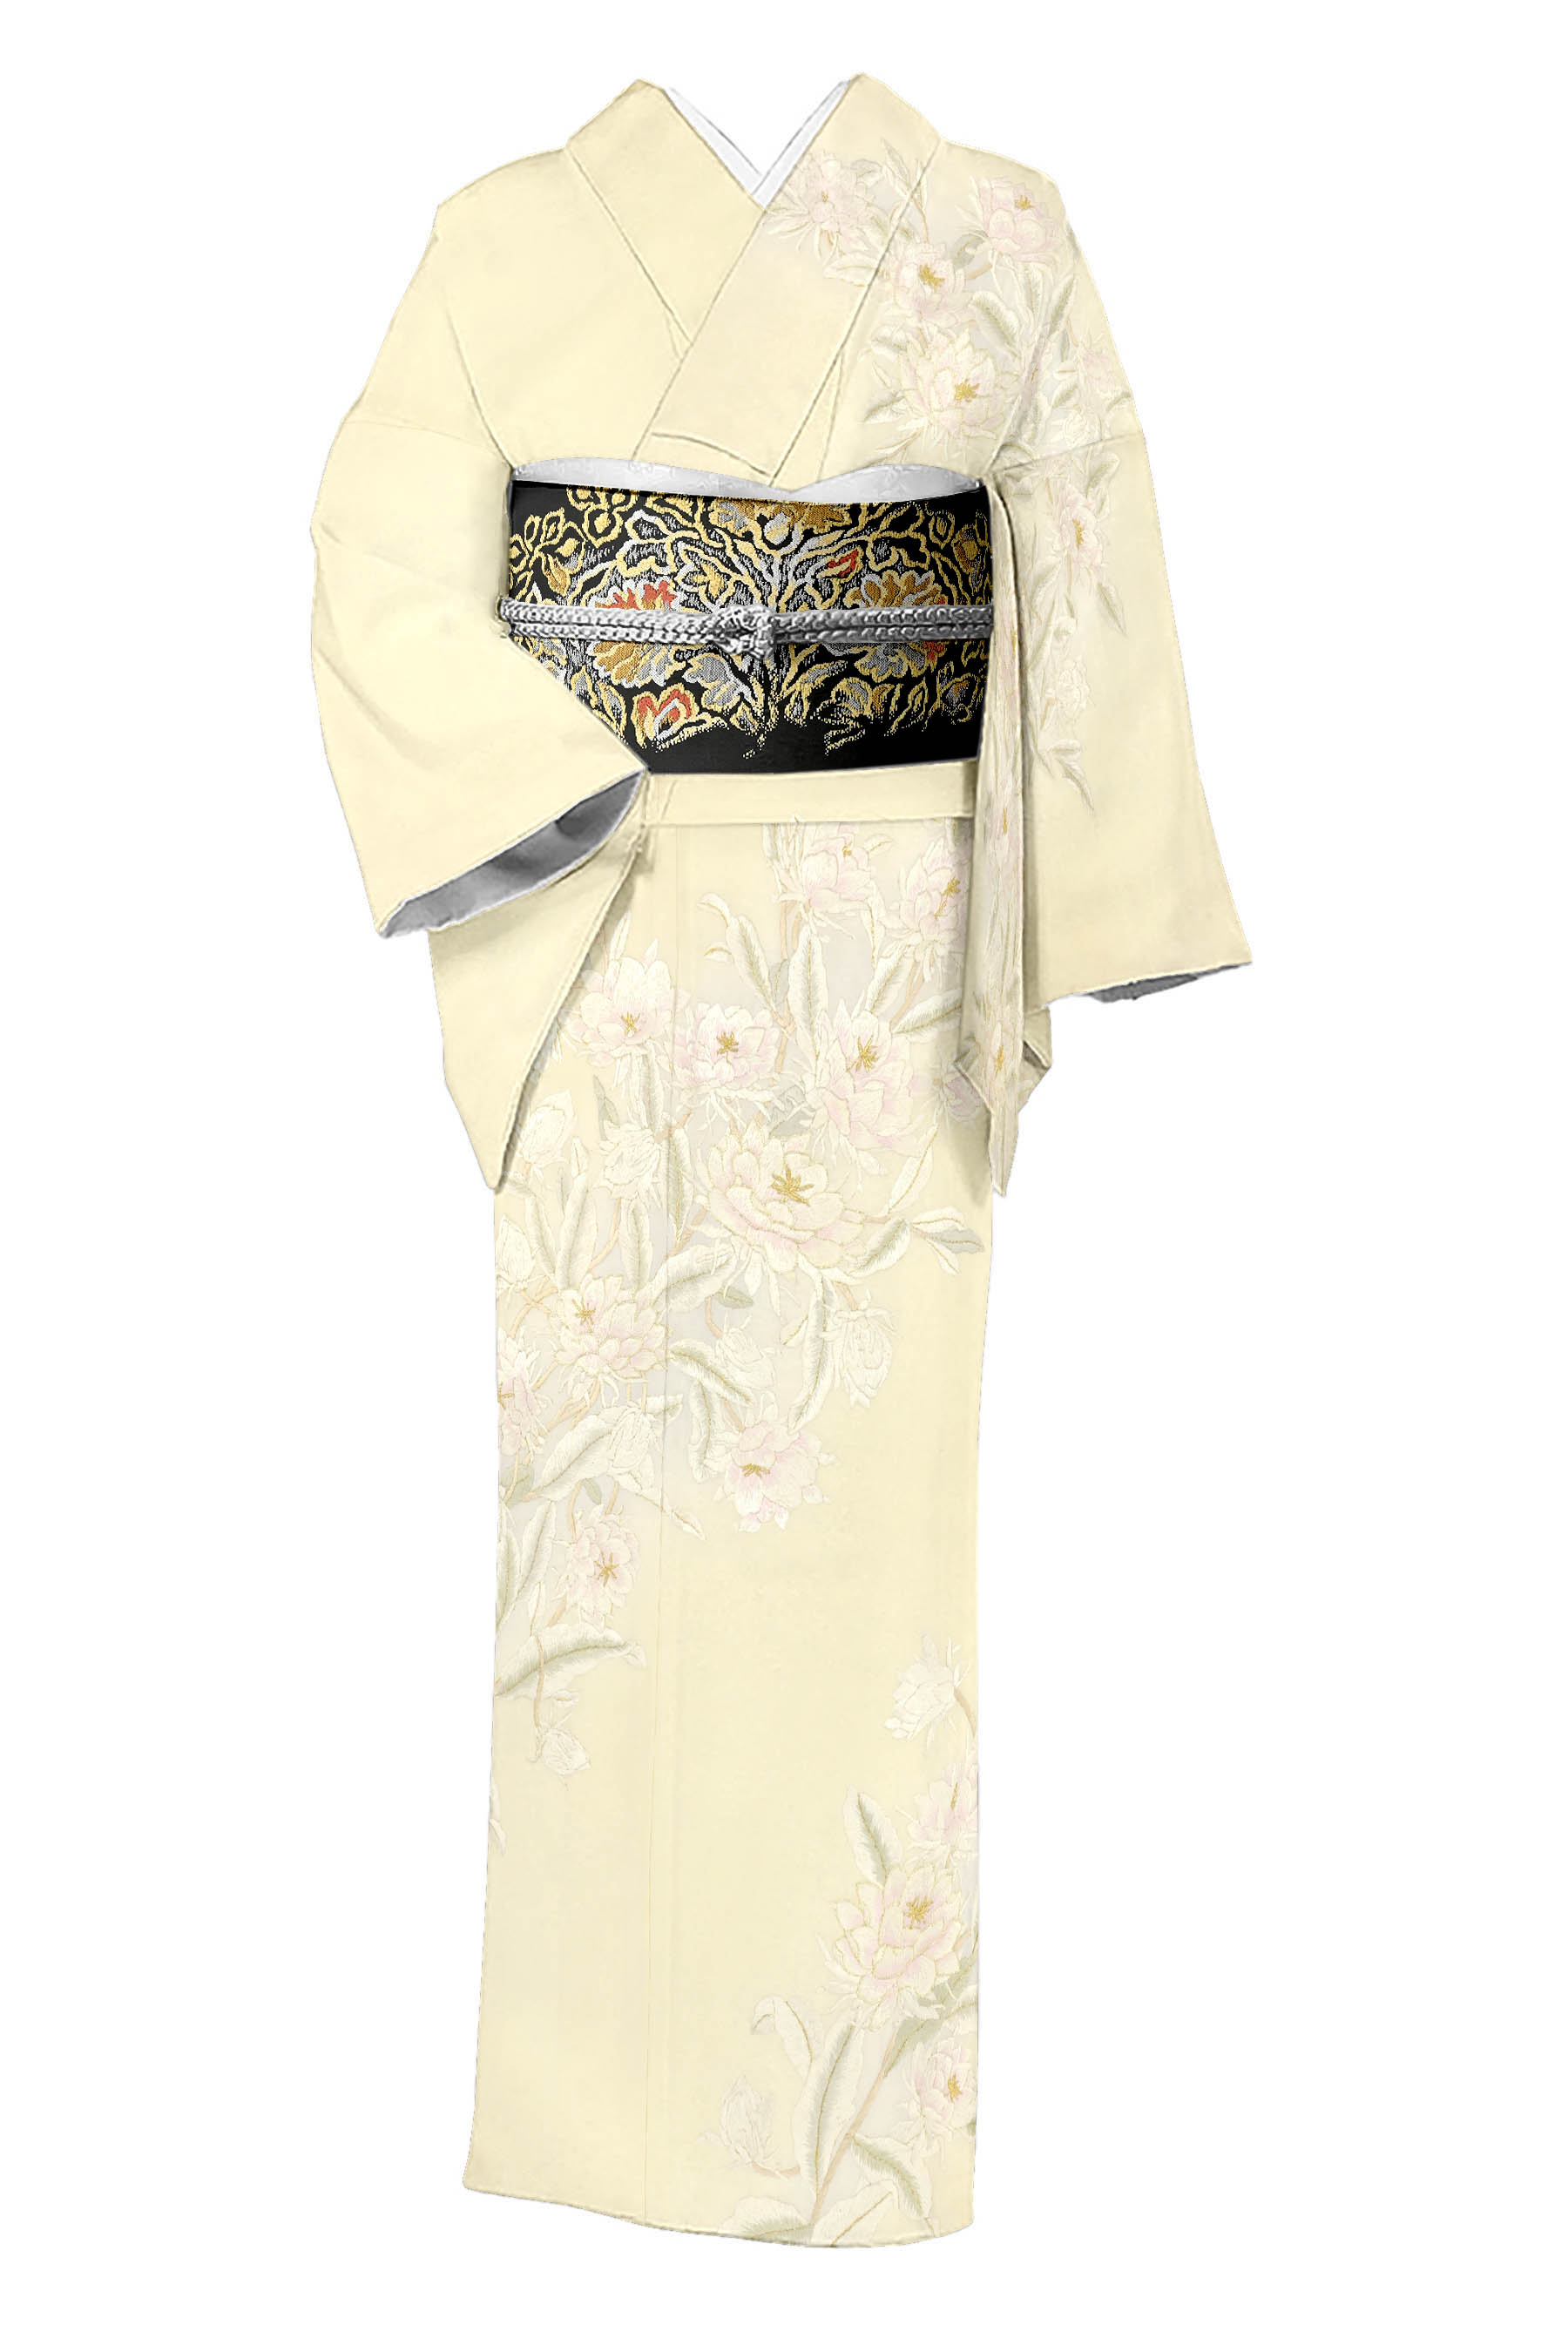 正絹 袋帯 全通柄 中国刺繍 絽刺し 唐草 花 図案 豪華絢爛 - 着物